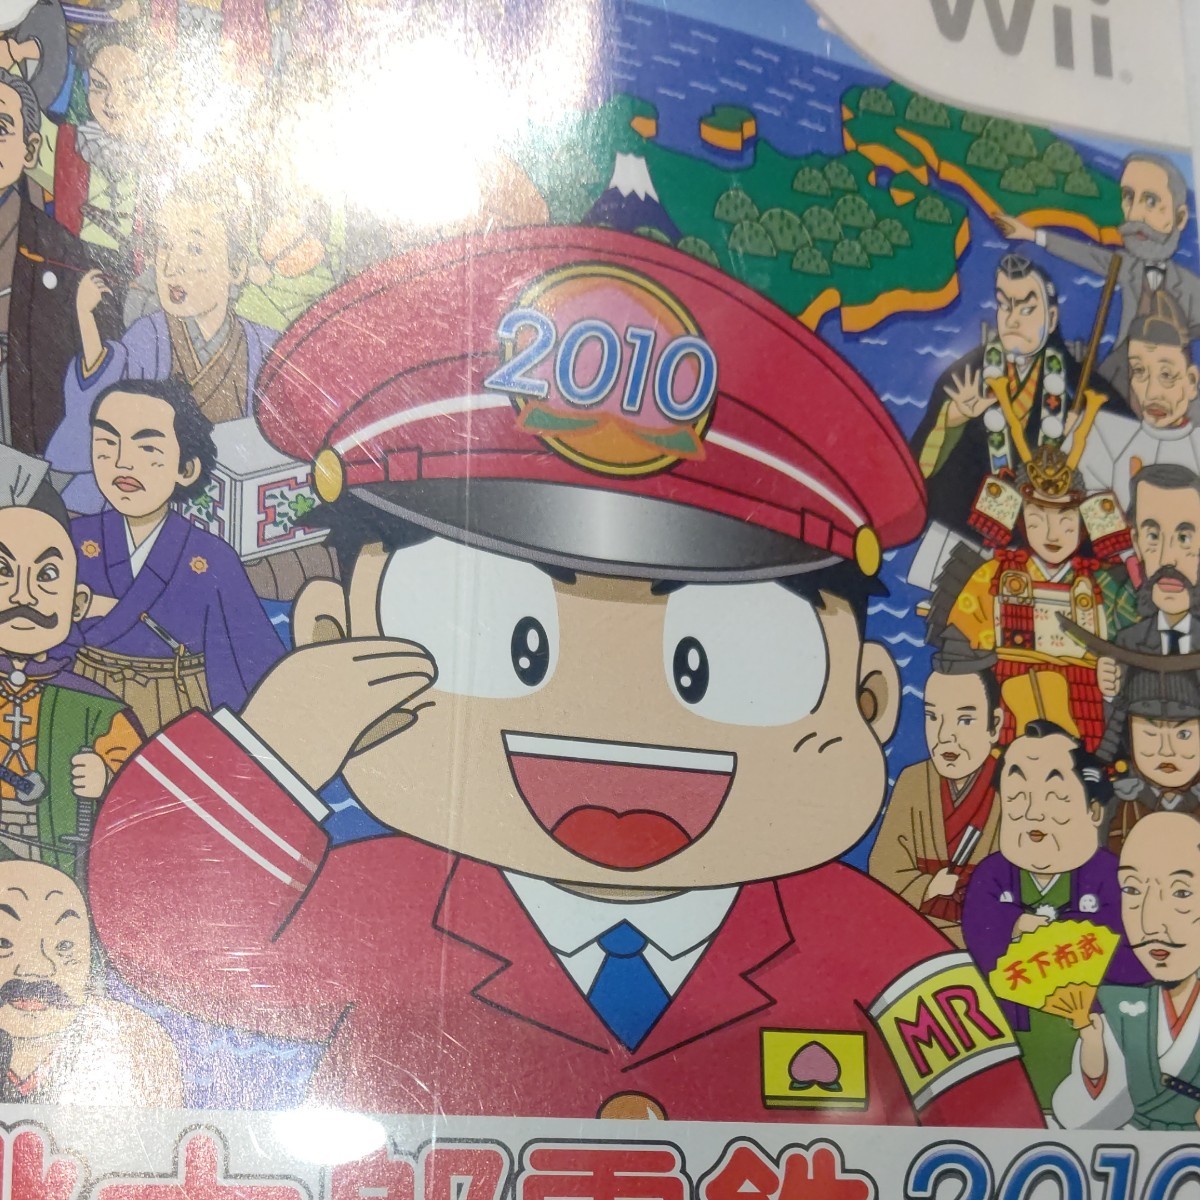 桃太郎電鉄2010 戦国・維新のヒーロー大集合！ の巻 Wii ソフト 桃鉄